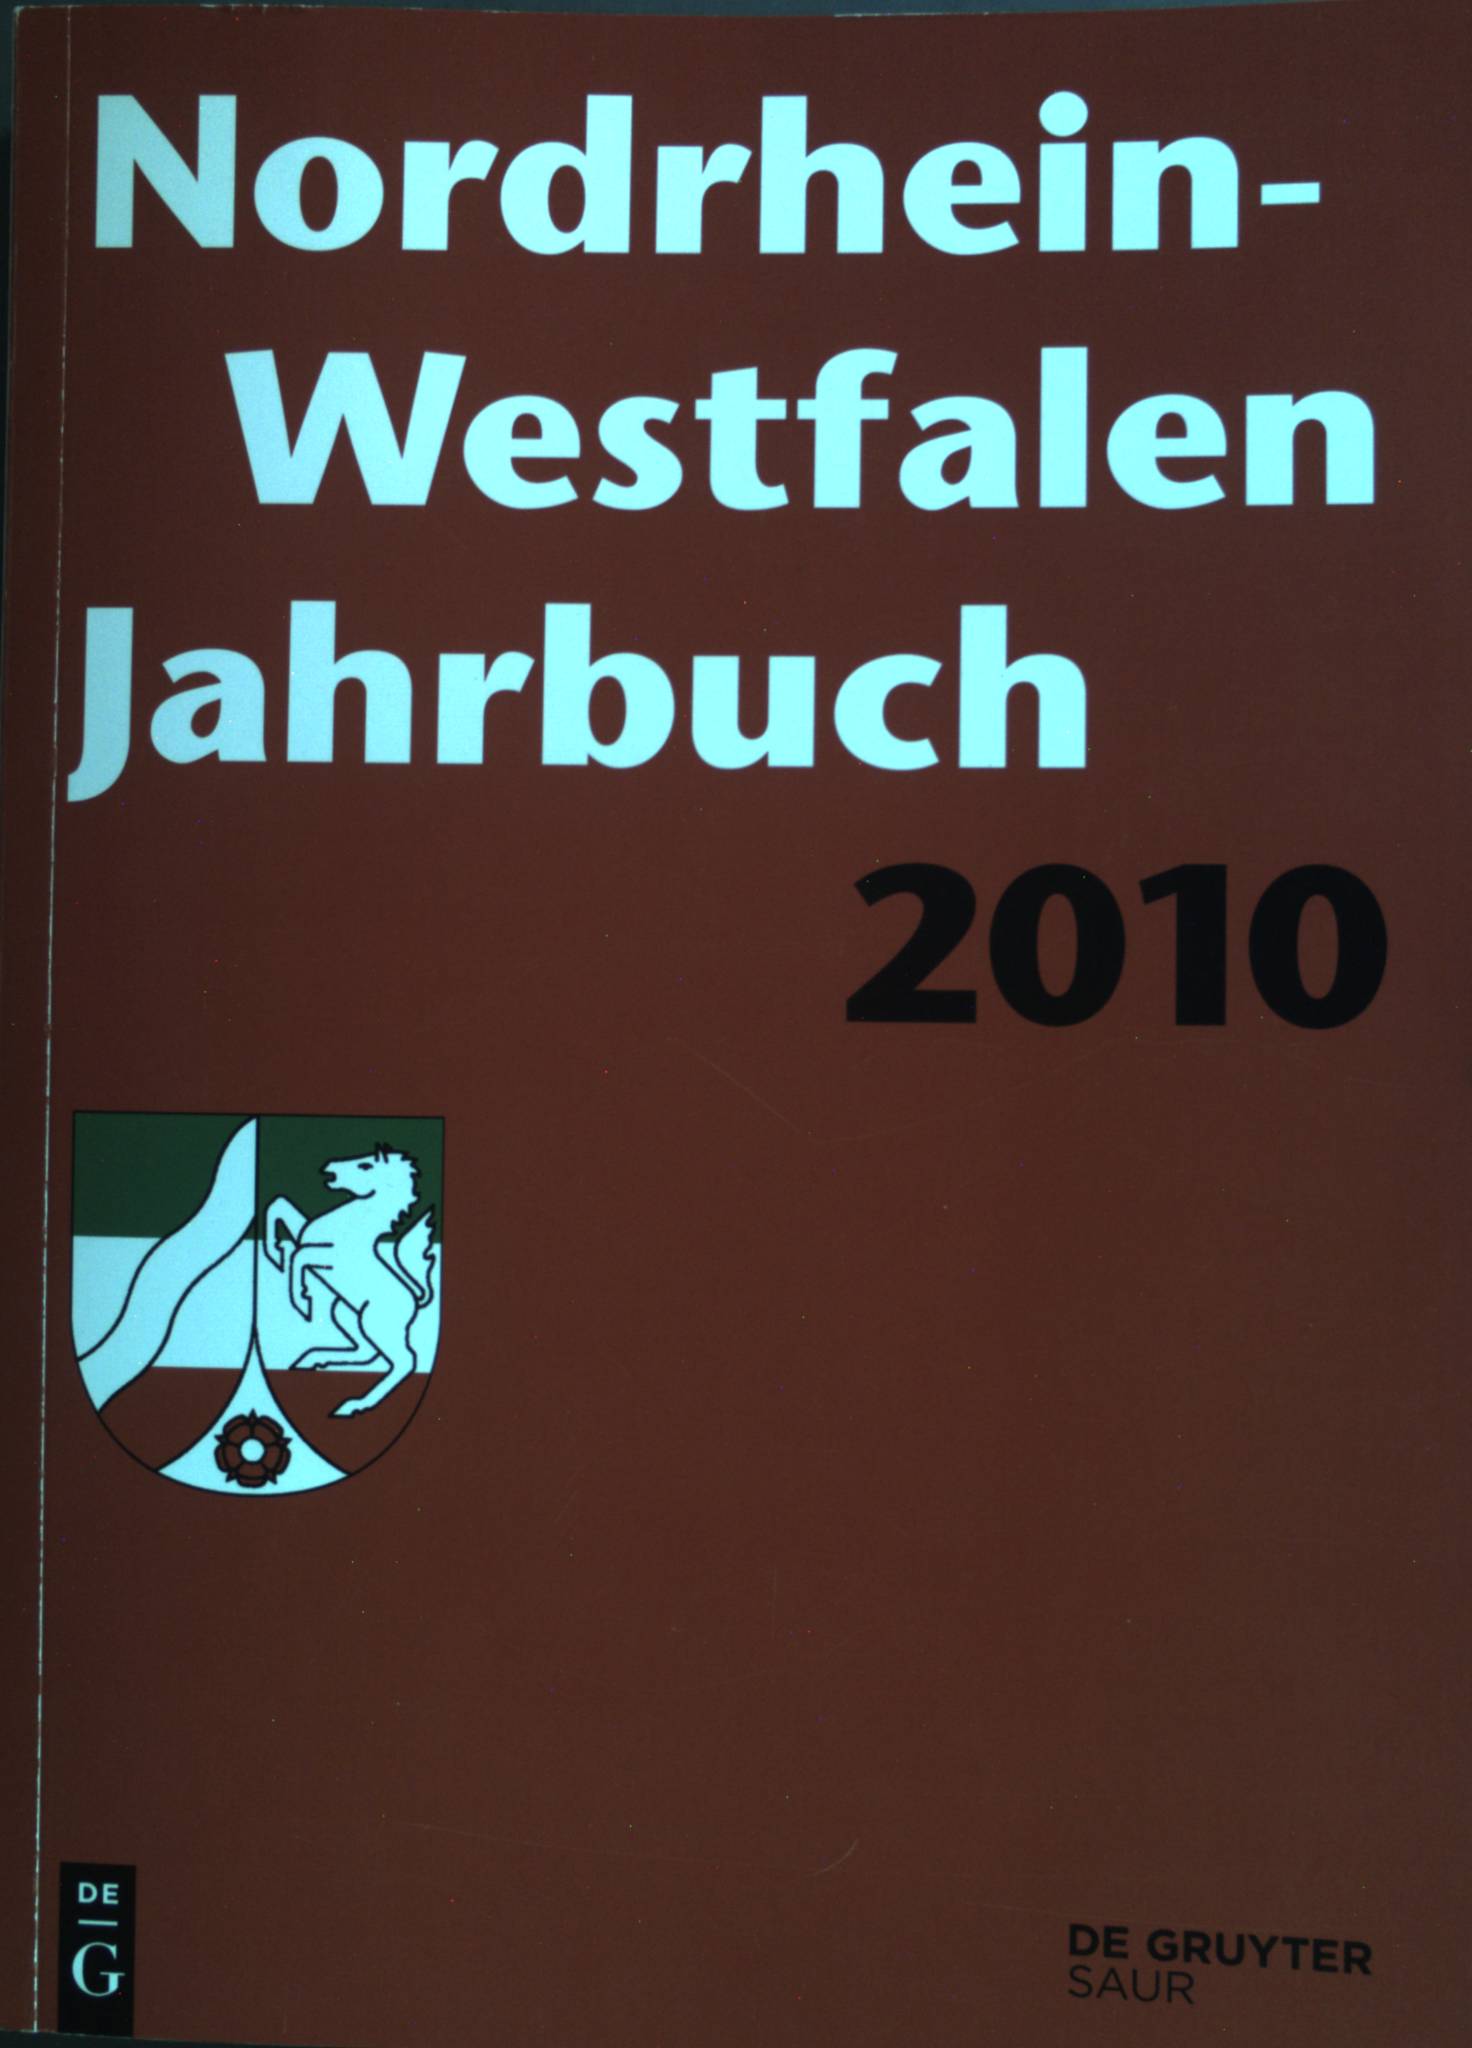 Nordrhein-Westfalen Jahrbuch: 11. Jahrgang 2010 - De Gruyter Saur